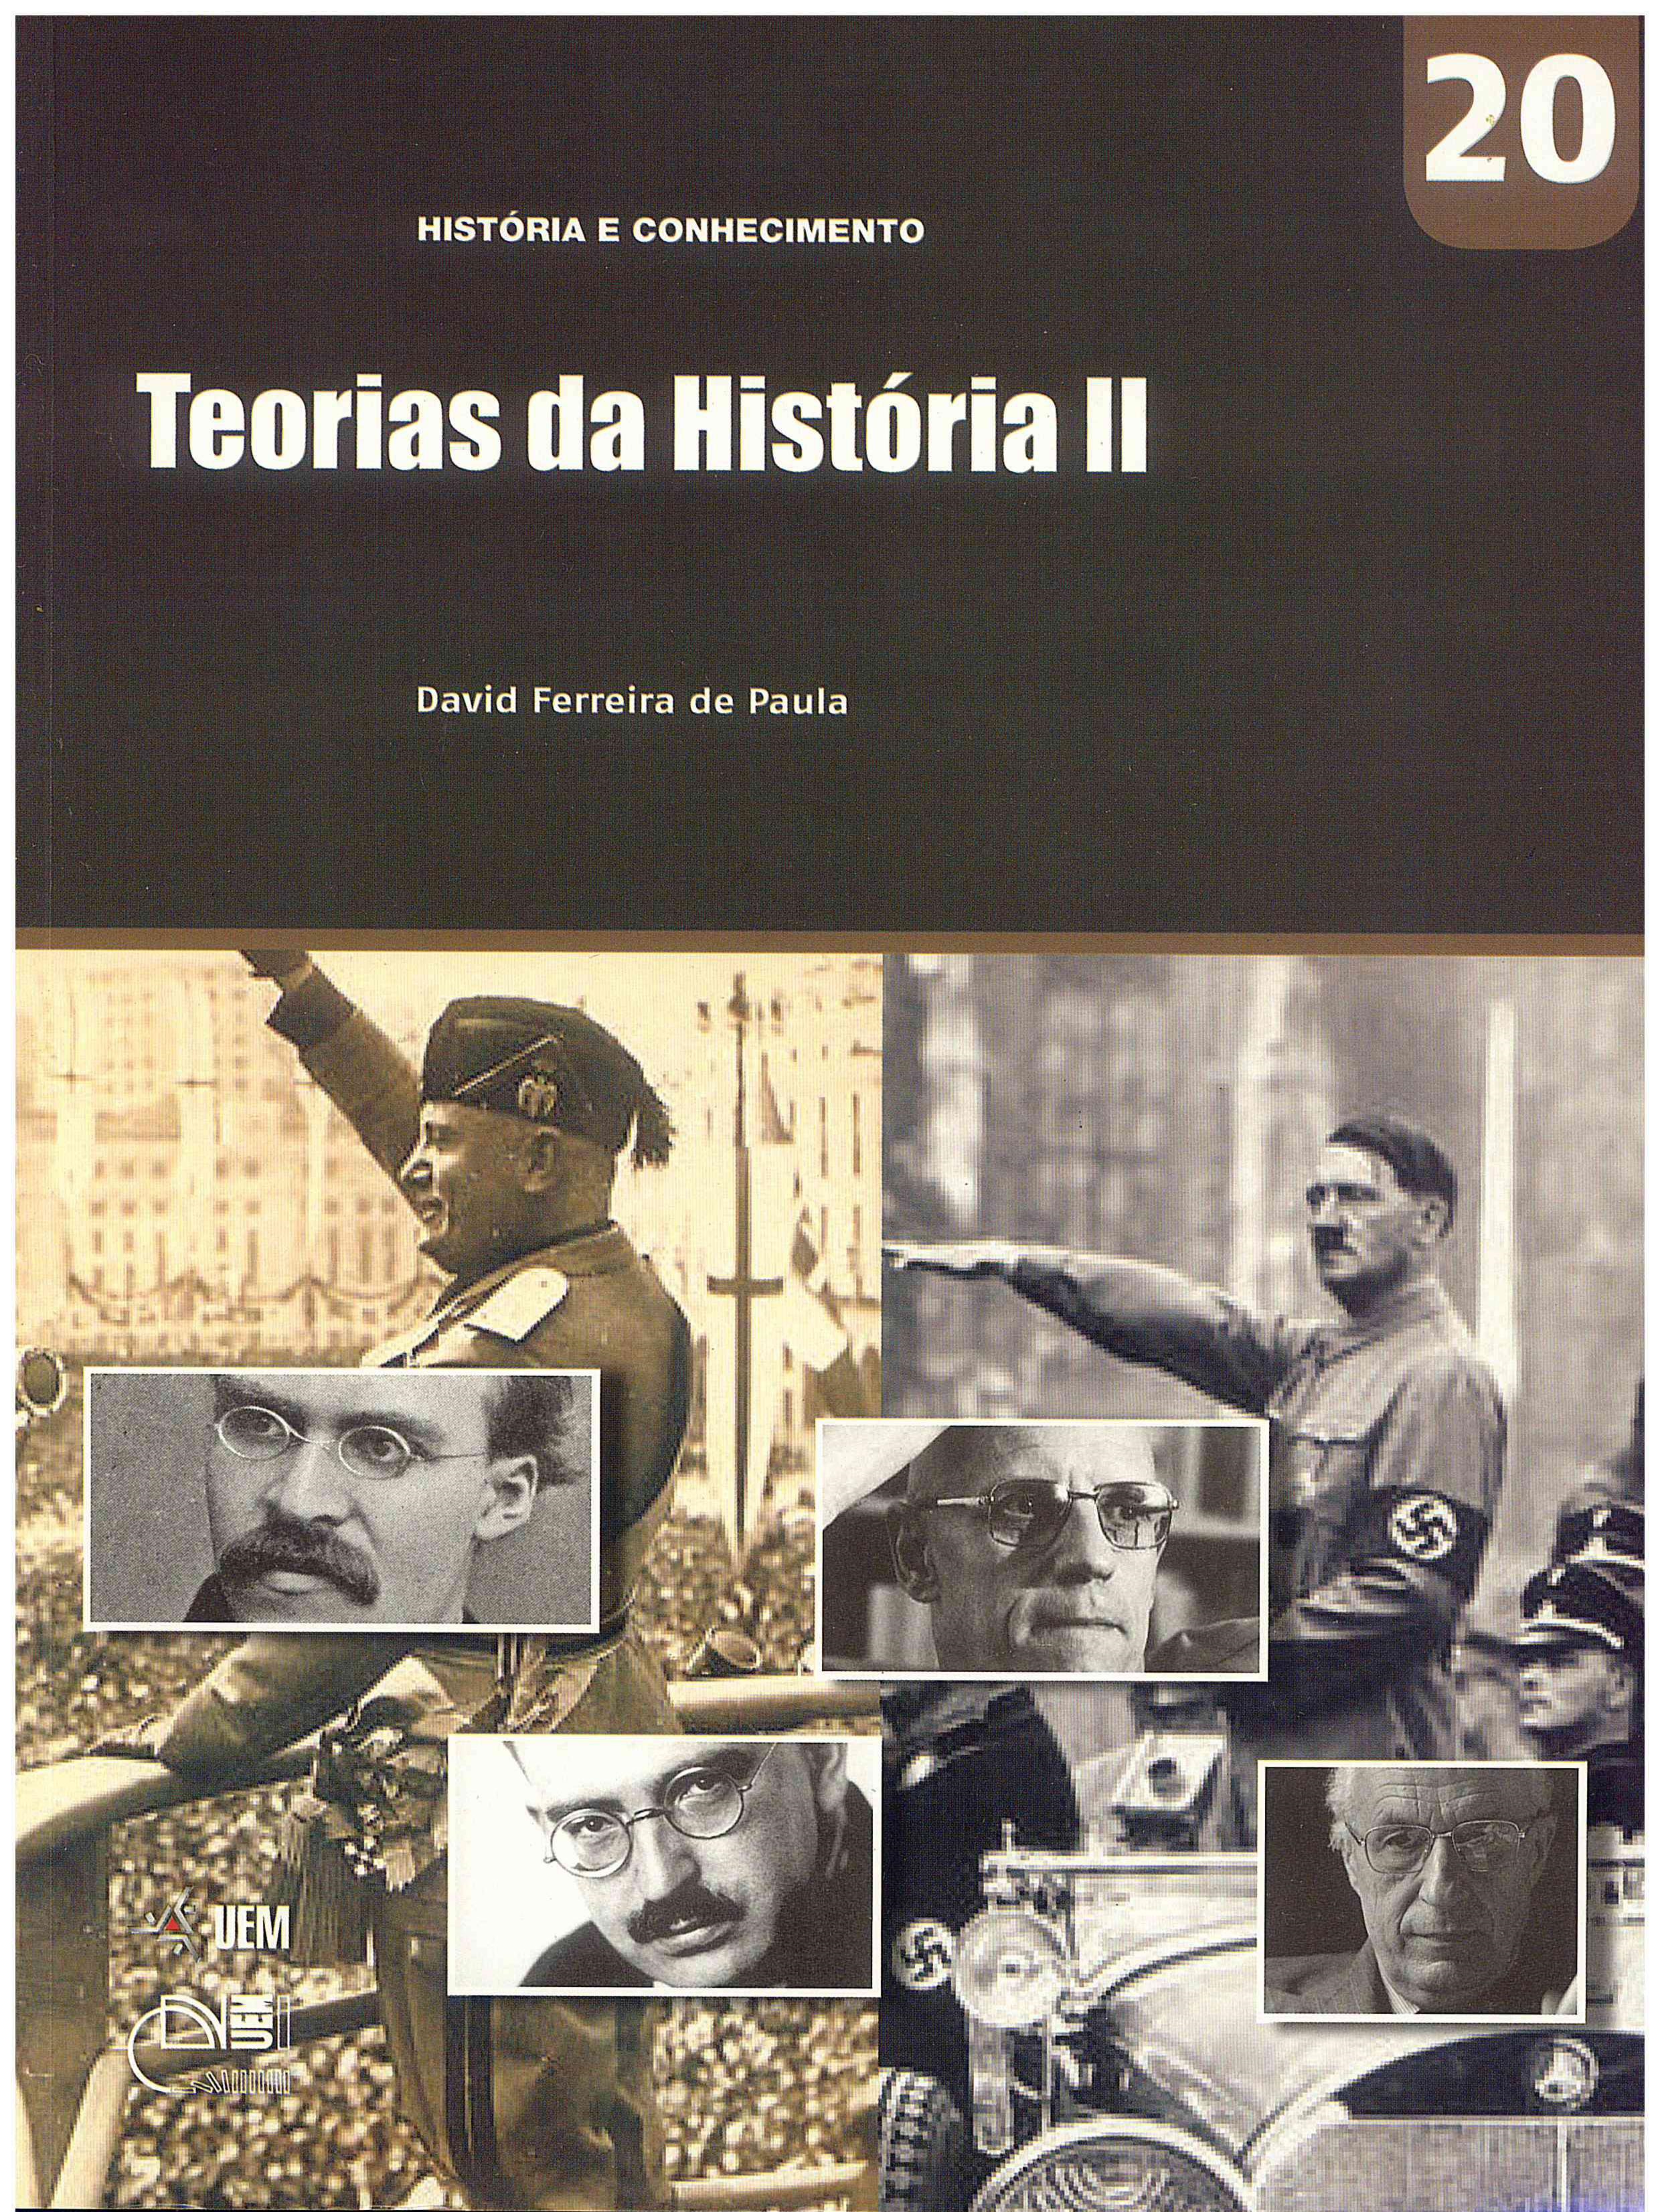 PAULA, D. F. Teorias da História II